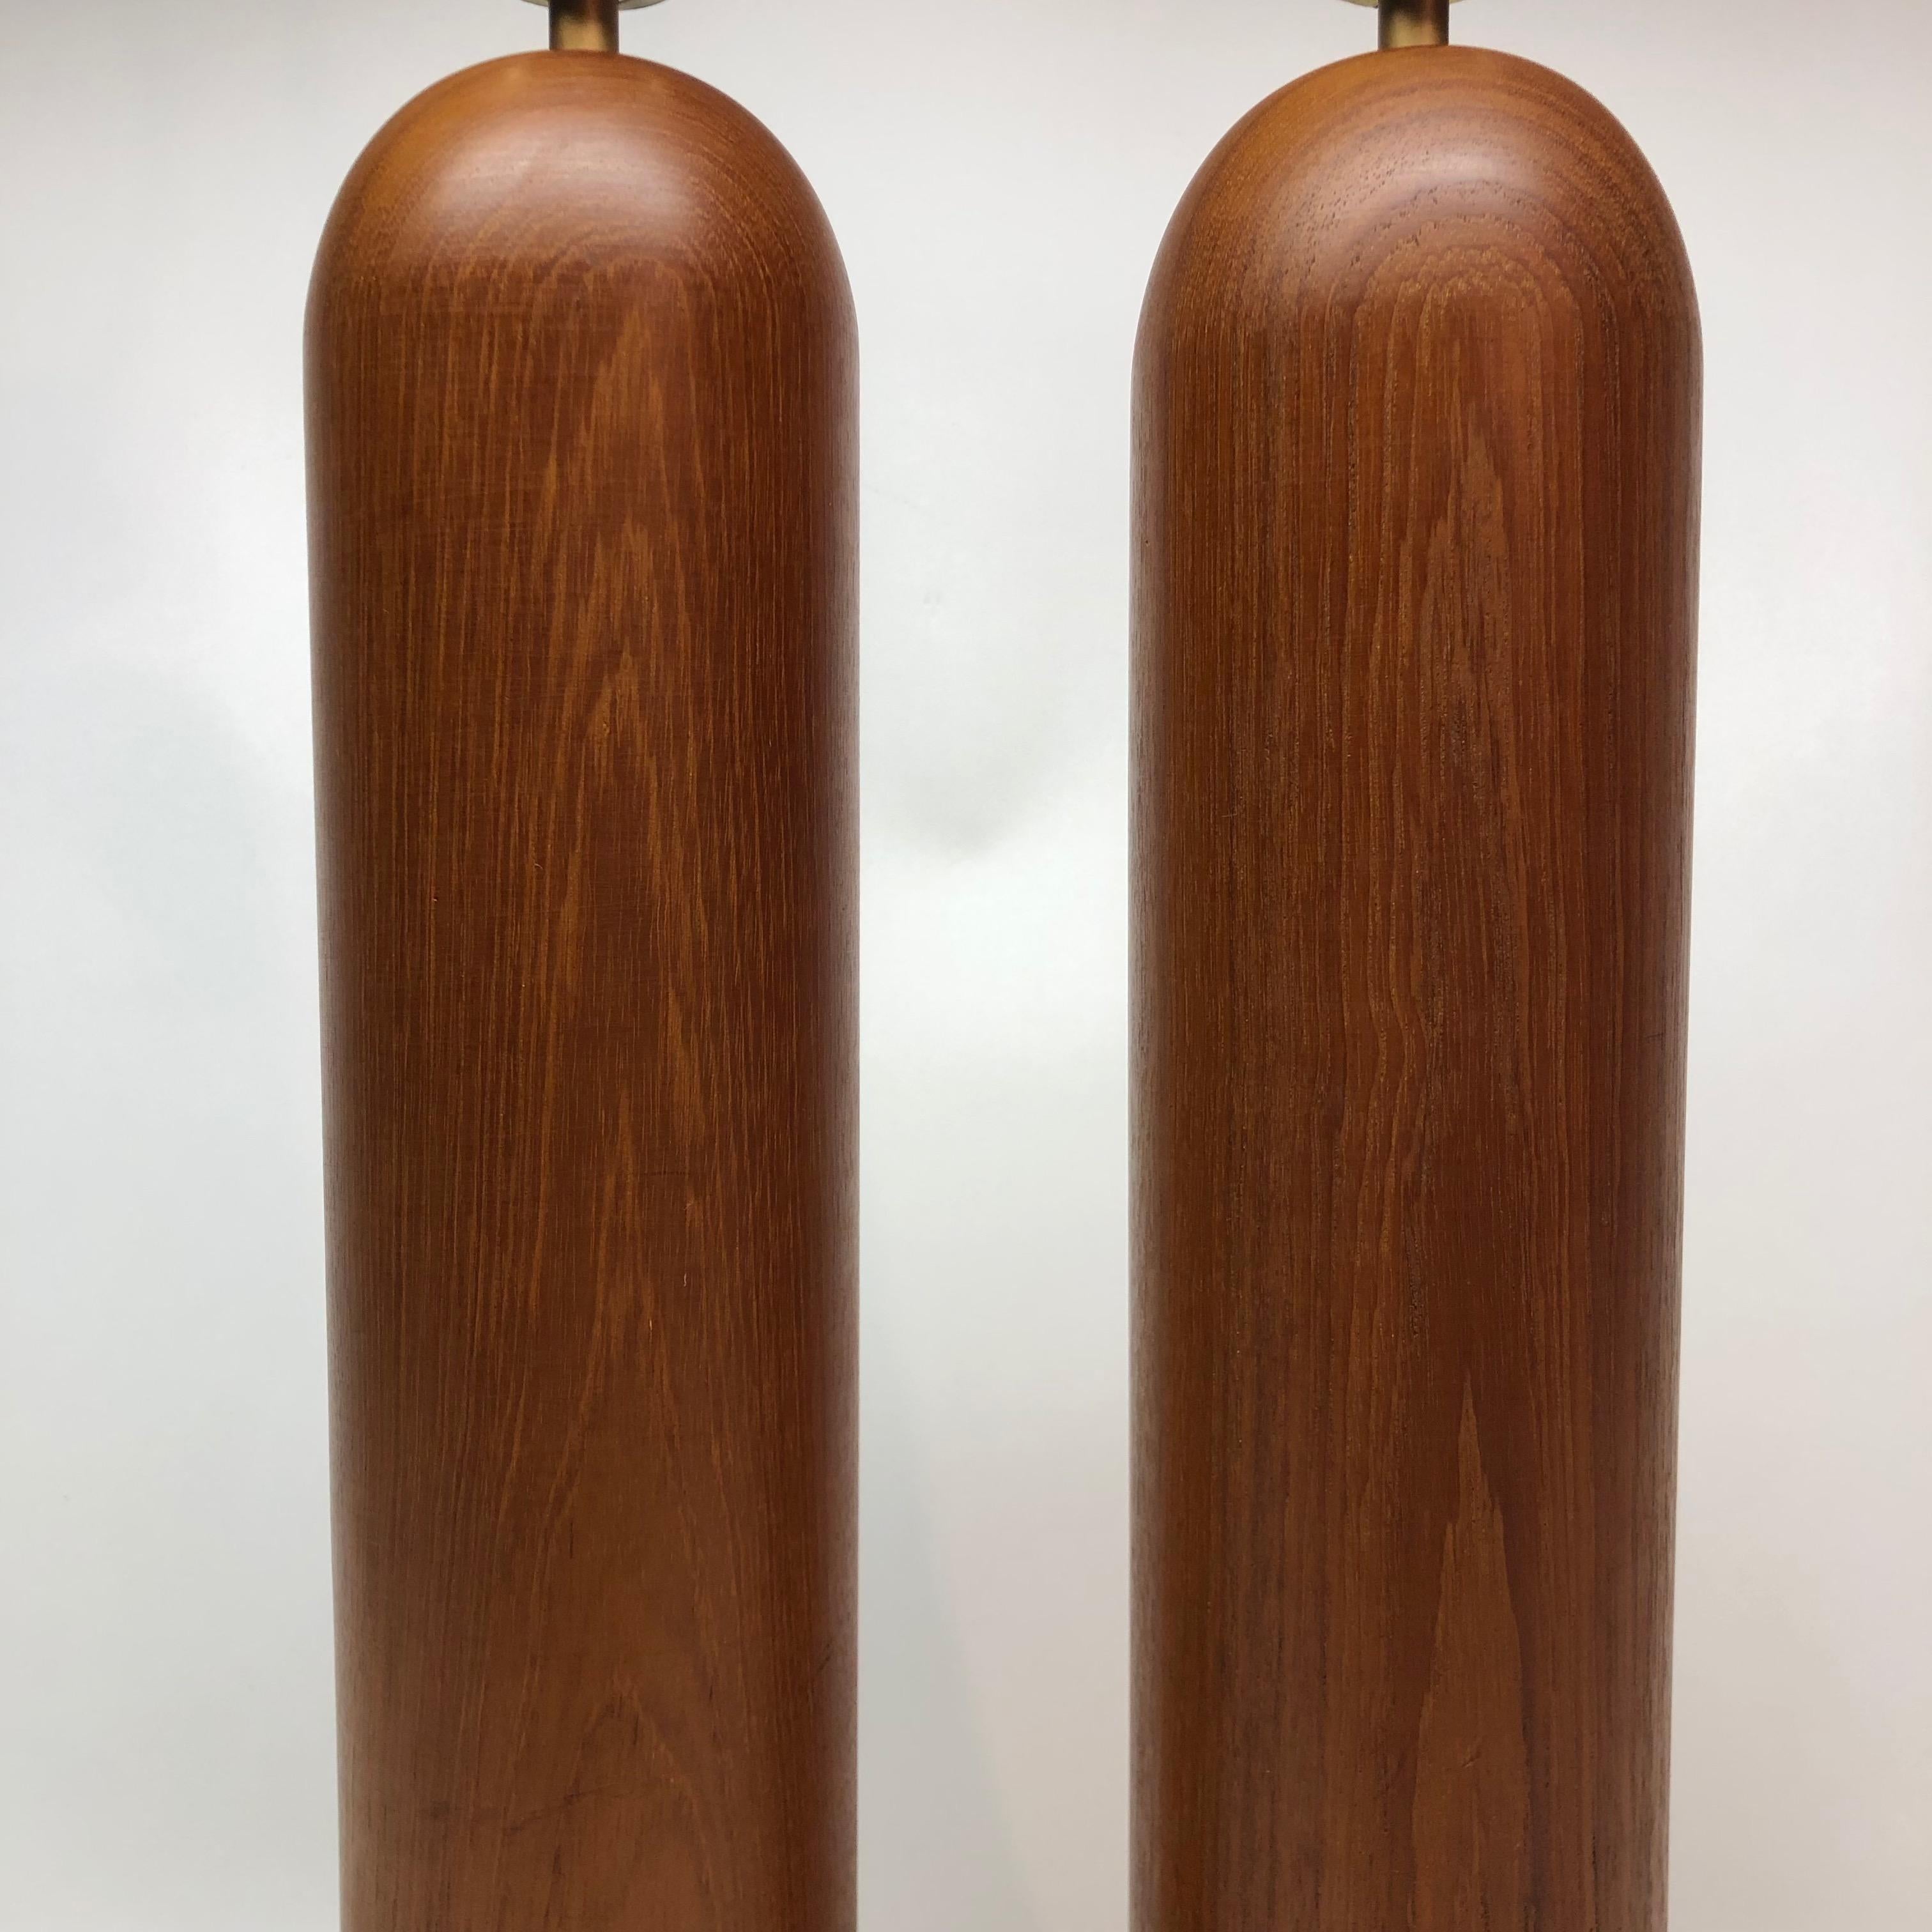 Modern pair of teak column lamps. Measures: Lamp base 20